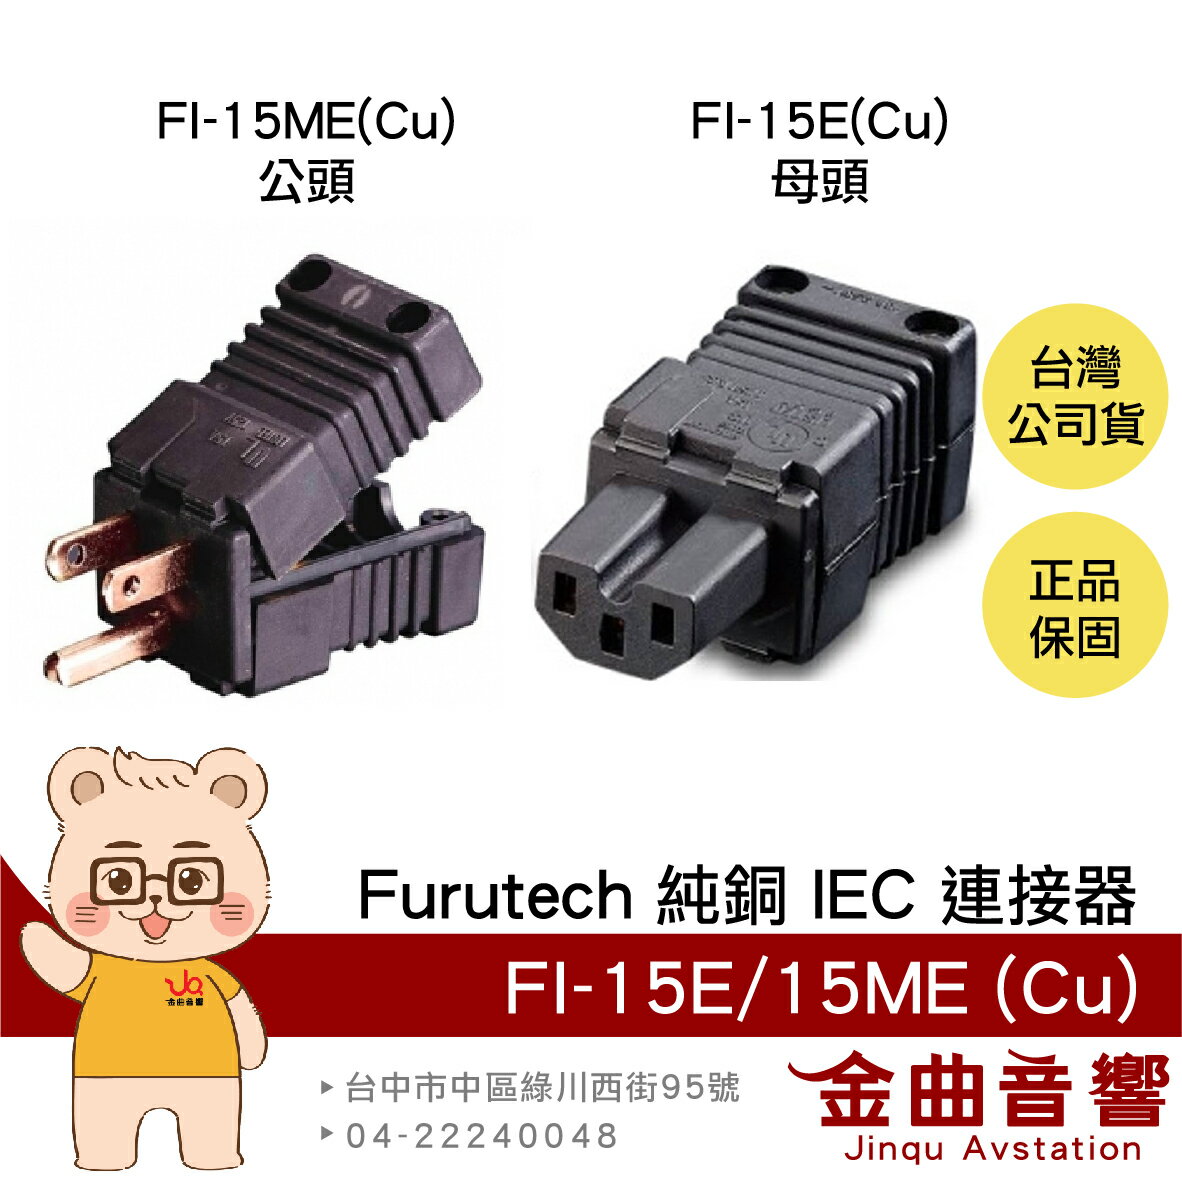 FURUTECH 古河 FI-15E(Cu) FI-15ME(Cu) 純銅 高效能 IEC 連接器 | 金曲音響